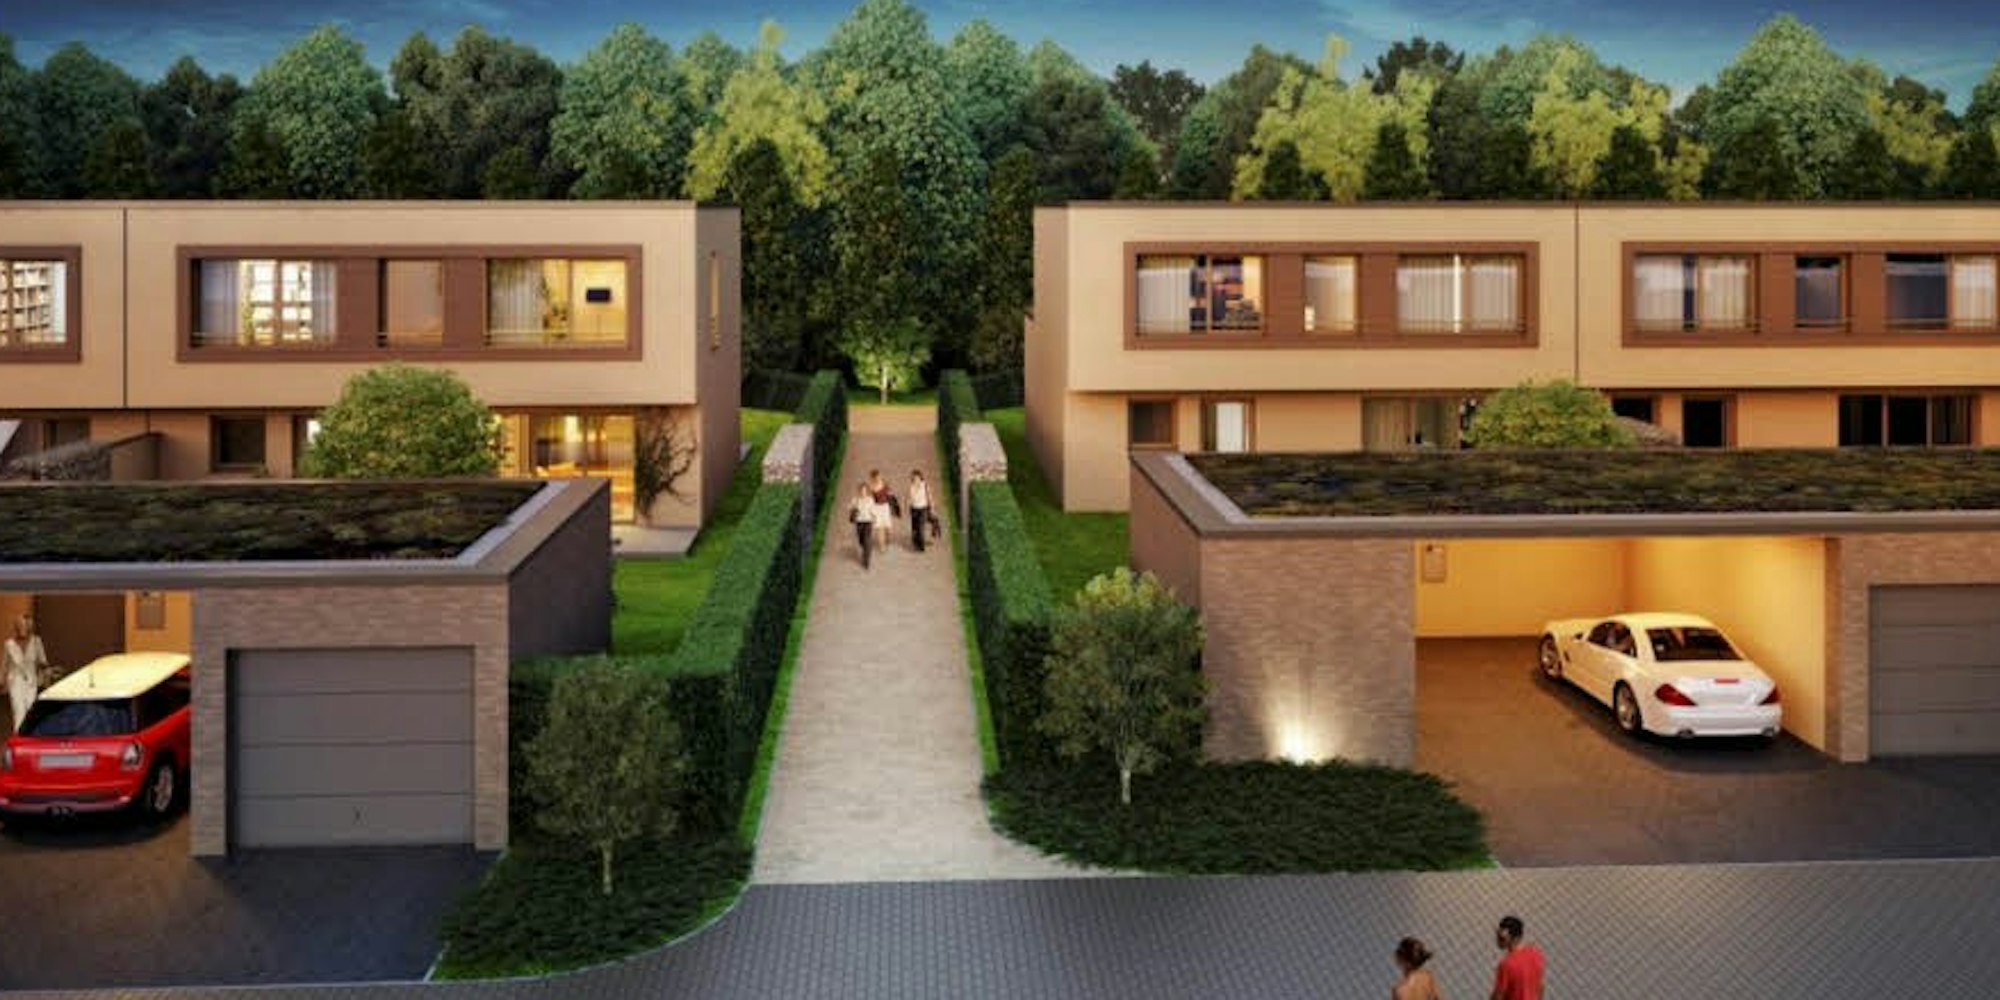 Auf den langgestreckten Grundstücken in Lövenich entstehen in zwei Bauabschnitten insgesamt 21 Stadthäuser. (Visualisierung: Die Lichtung)